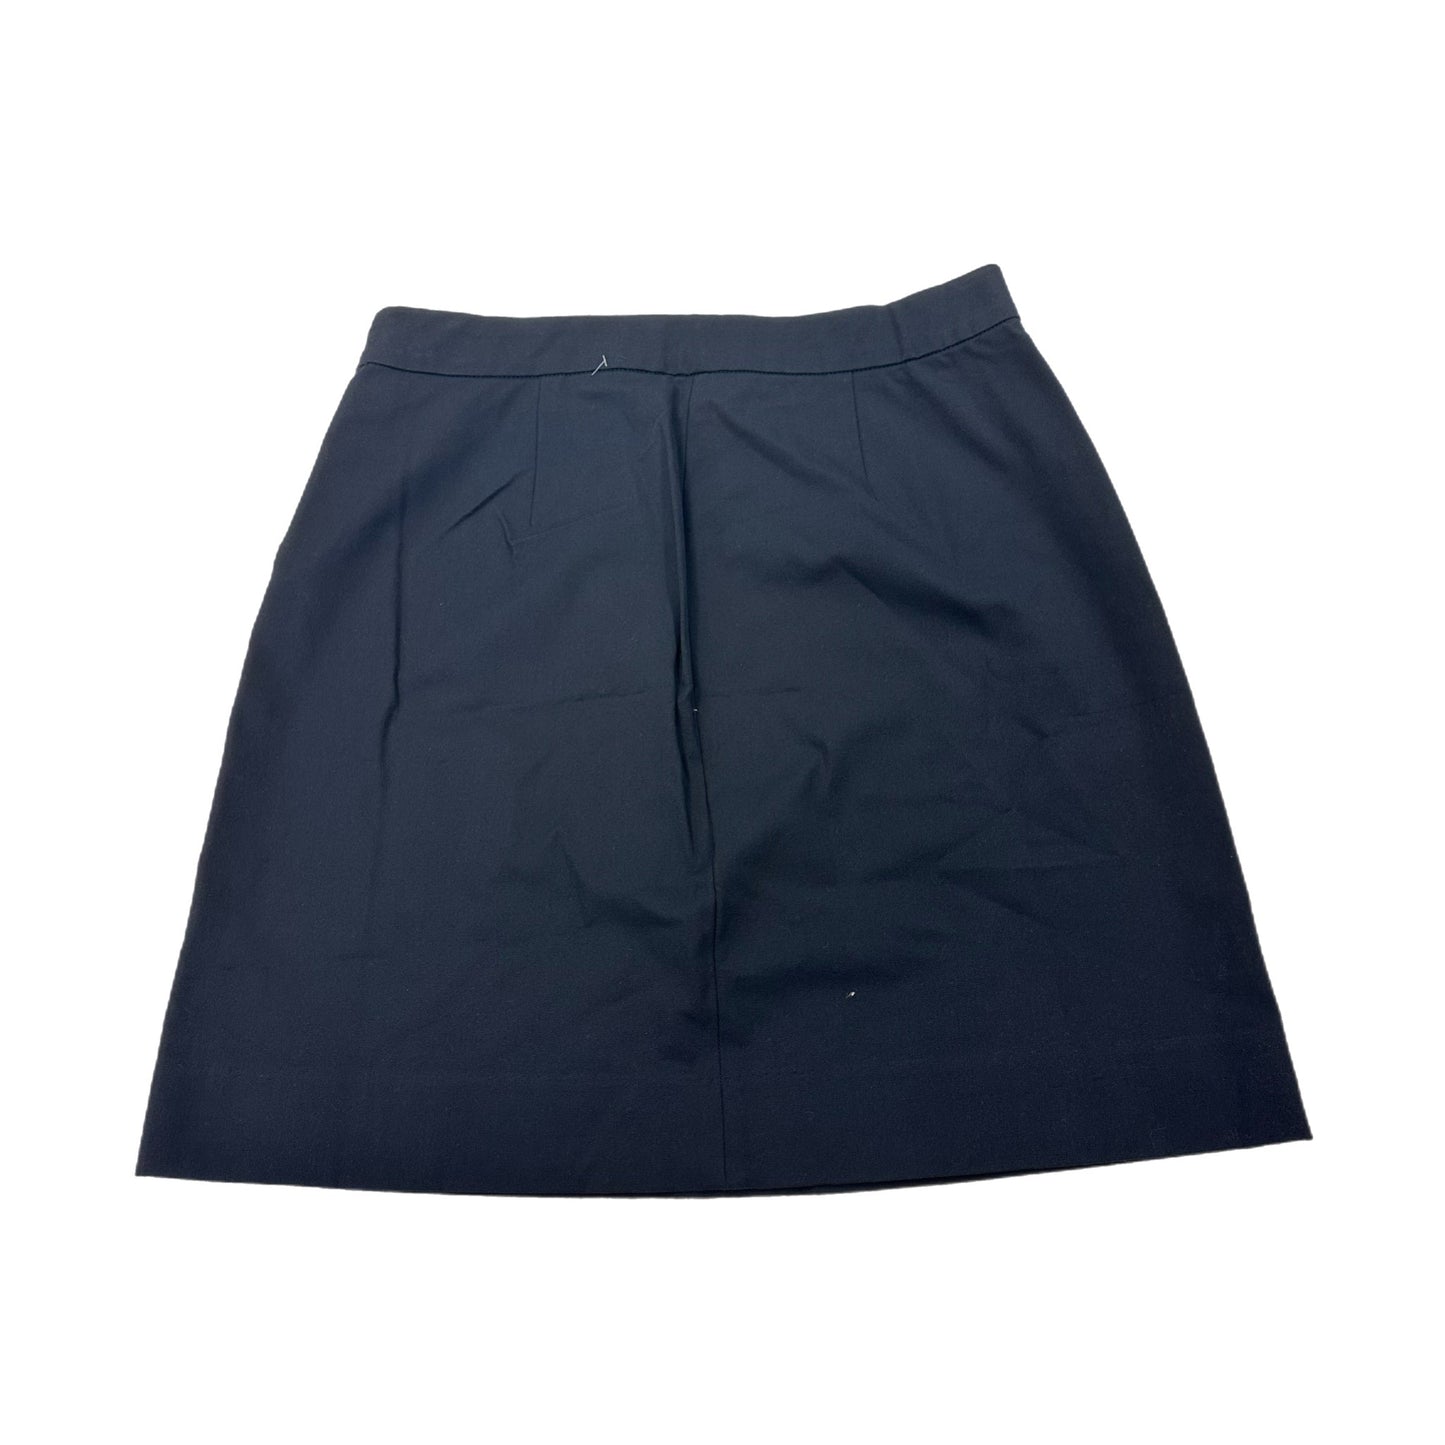 Skirt Mini & Short By Everlane  Size: 10